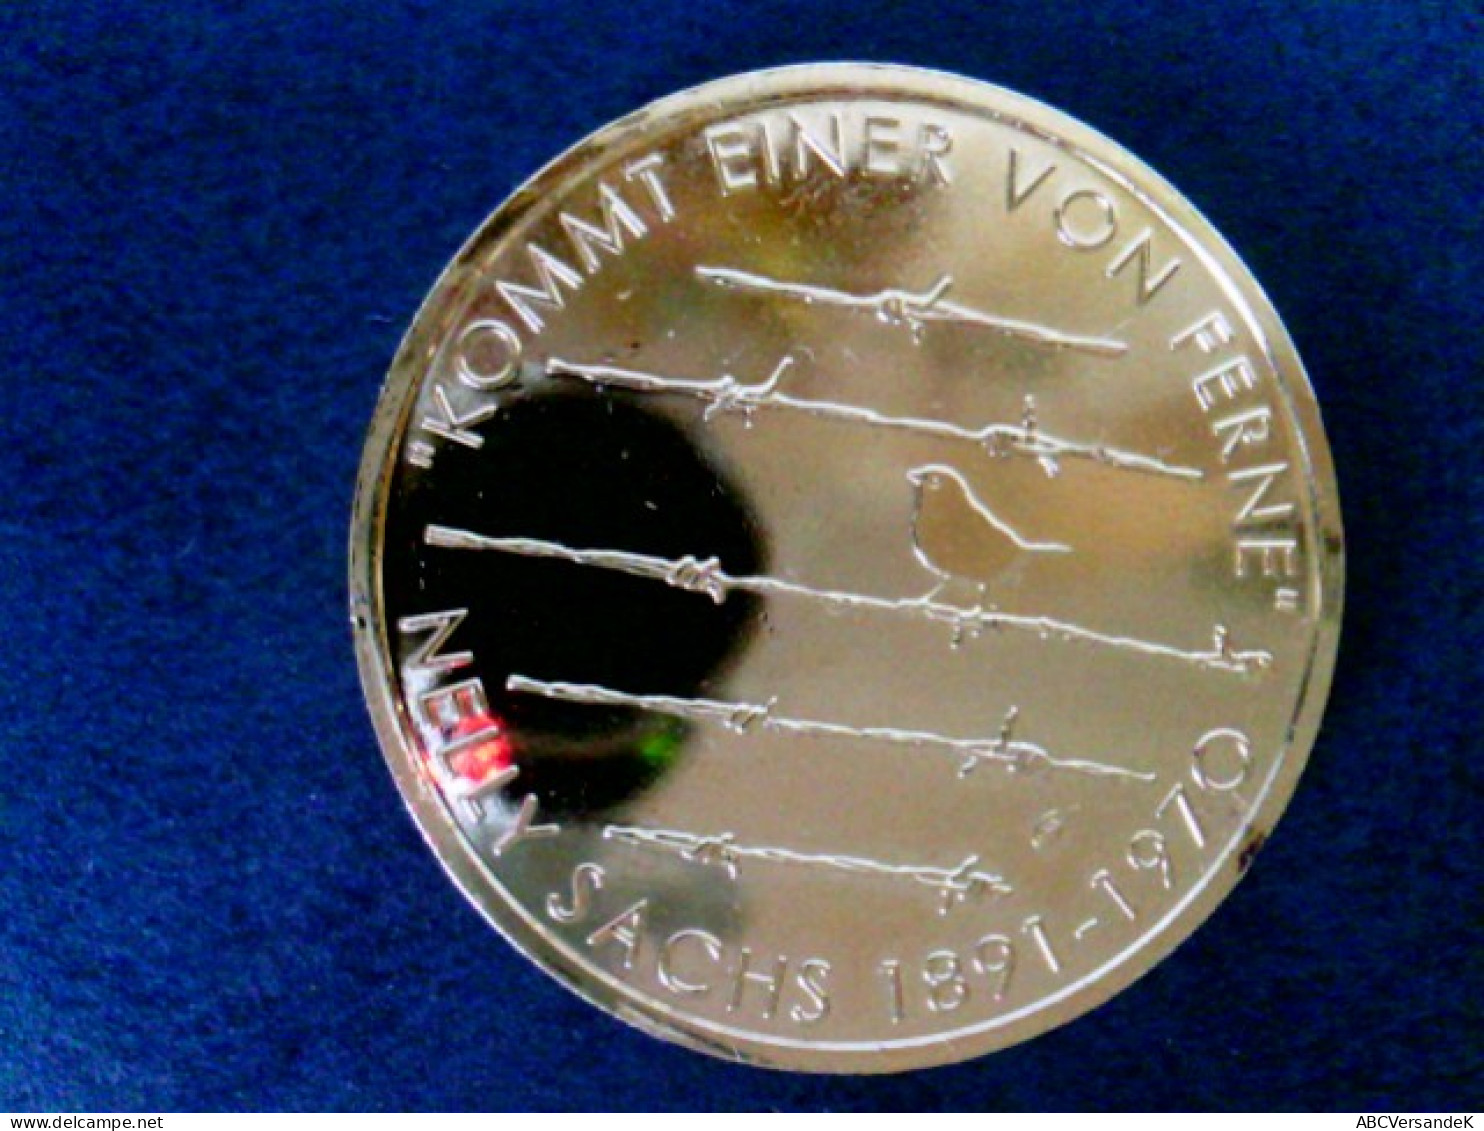 Münzen/ Medaillen: 1 Münze 20 Euro Nelly Sachs, 925 Silber, Vergoldet Mit 24 Karat Goldauflage, In Kapsel - Numismatiek